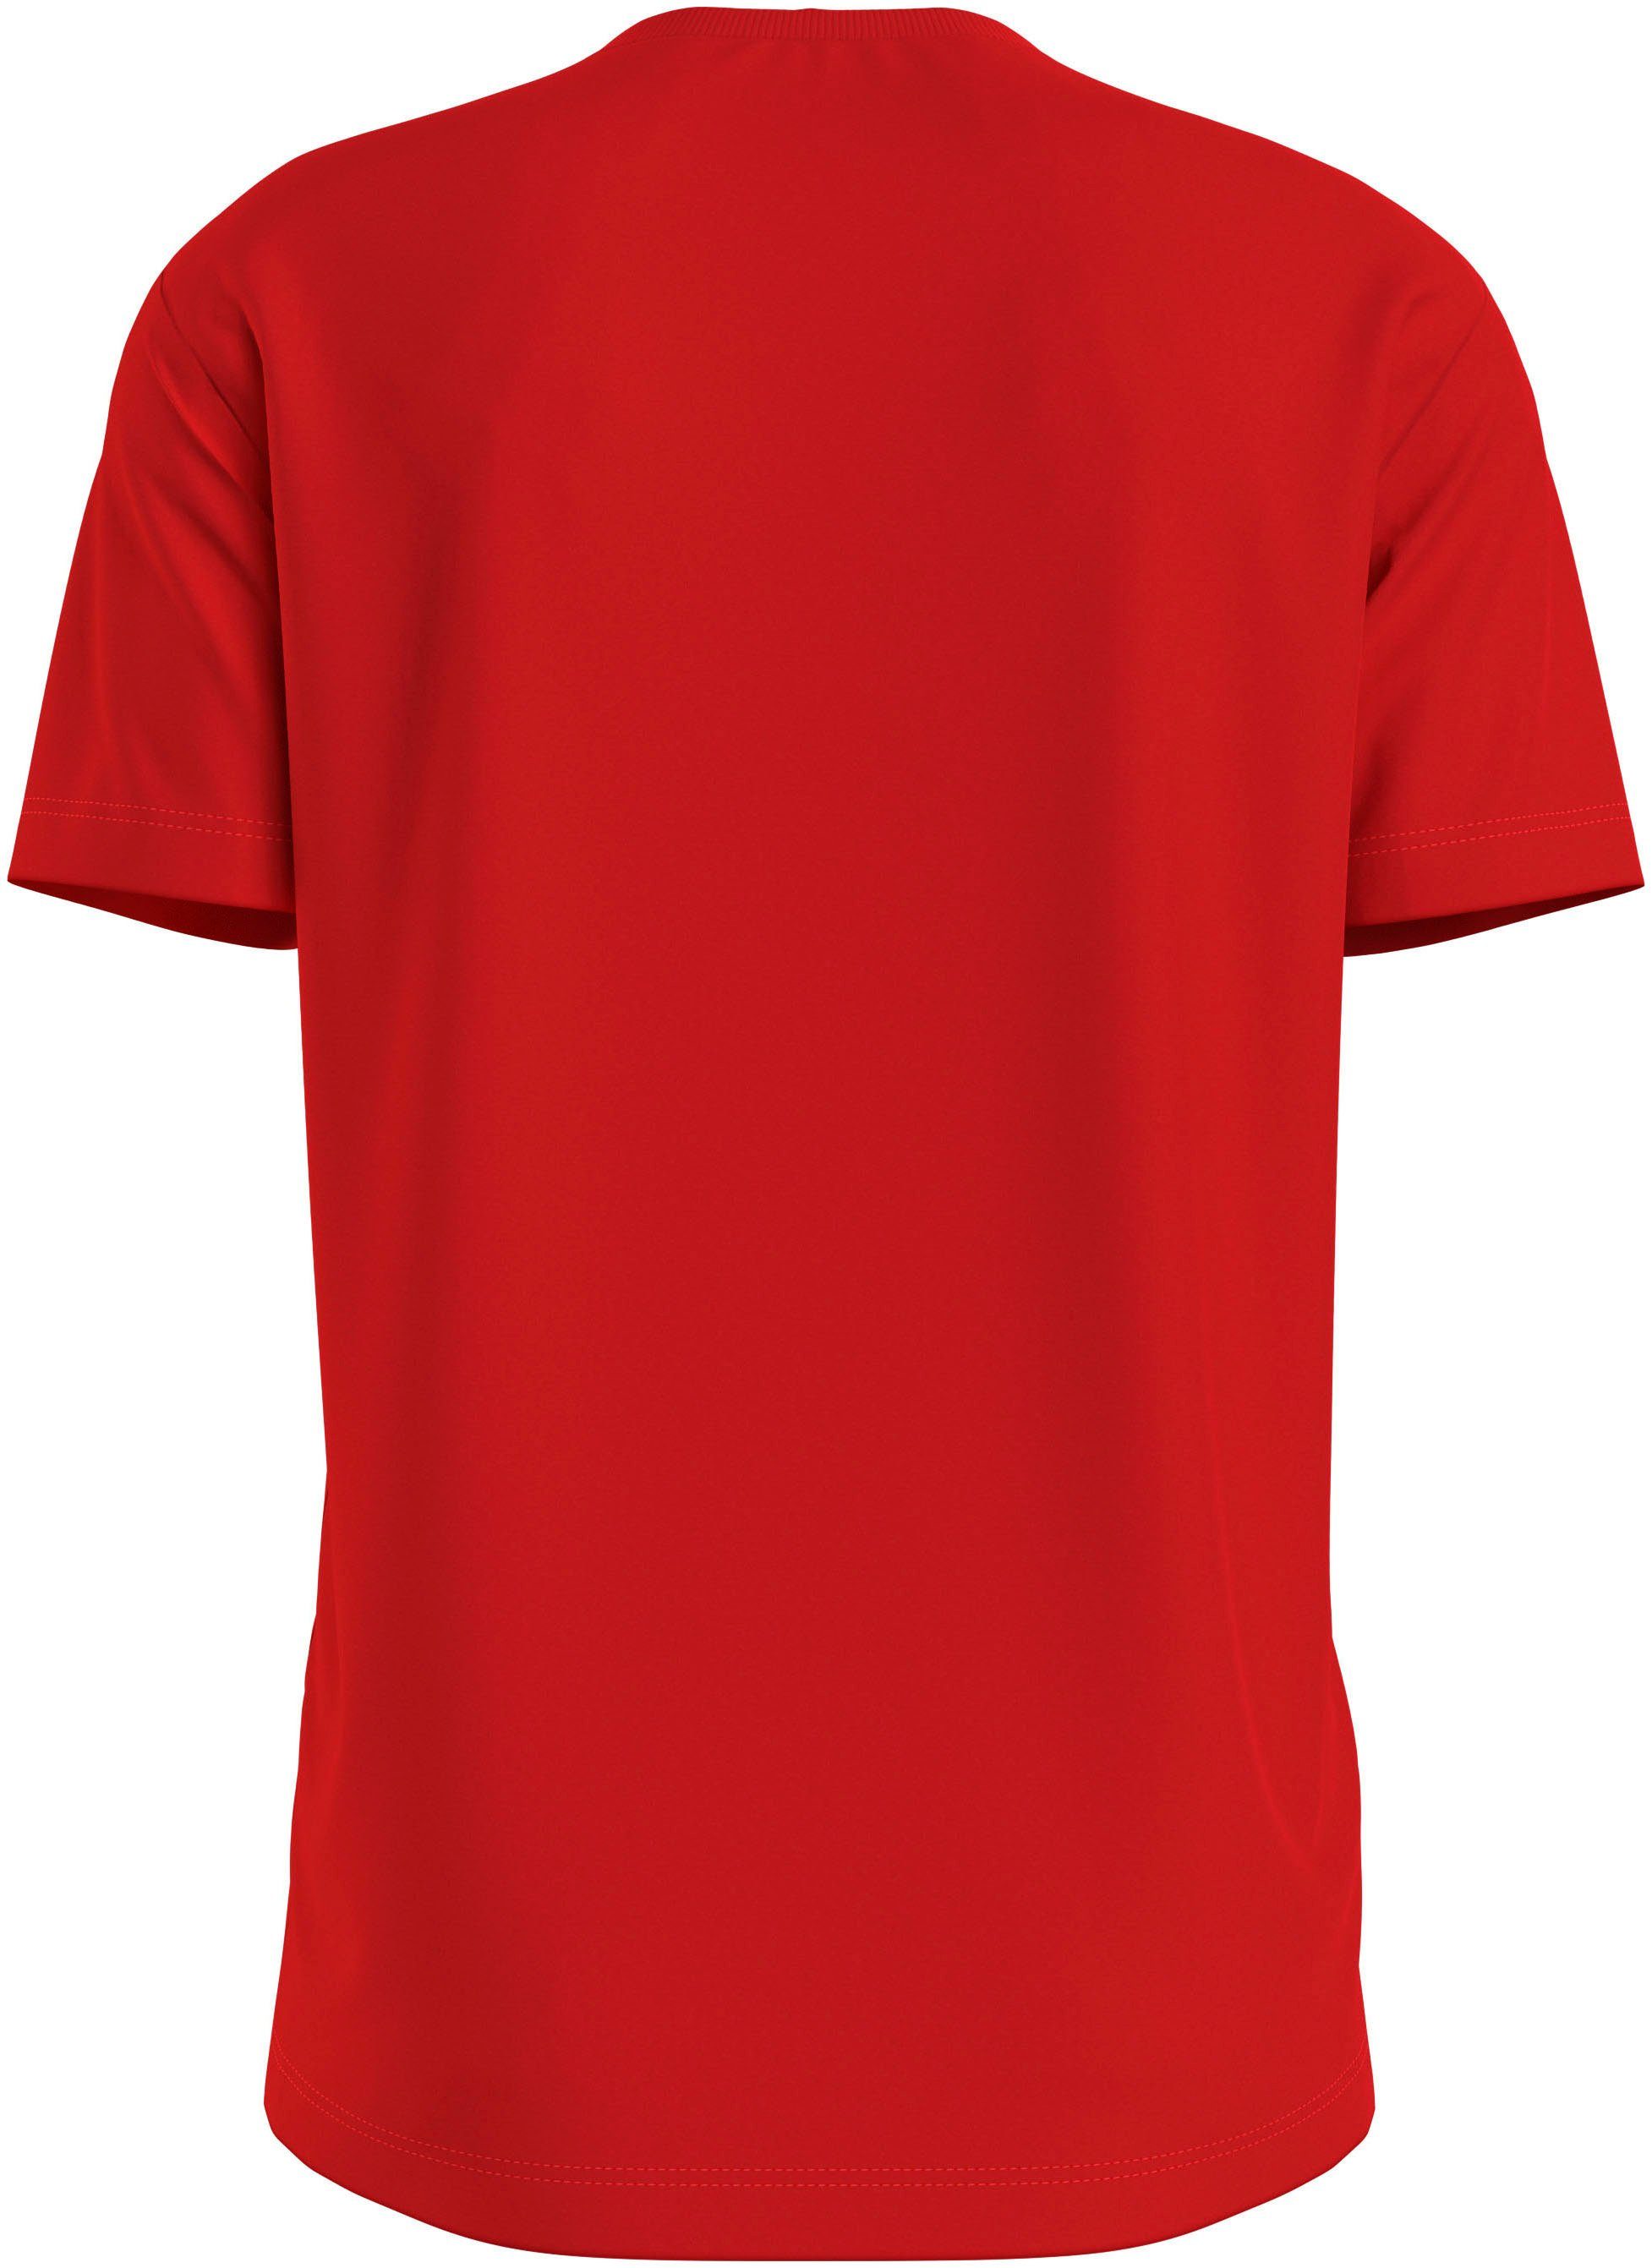 Calvin Klein T-shirt MONOLOGO REGULAR TEE met een logo-opschrift